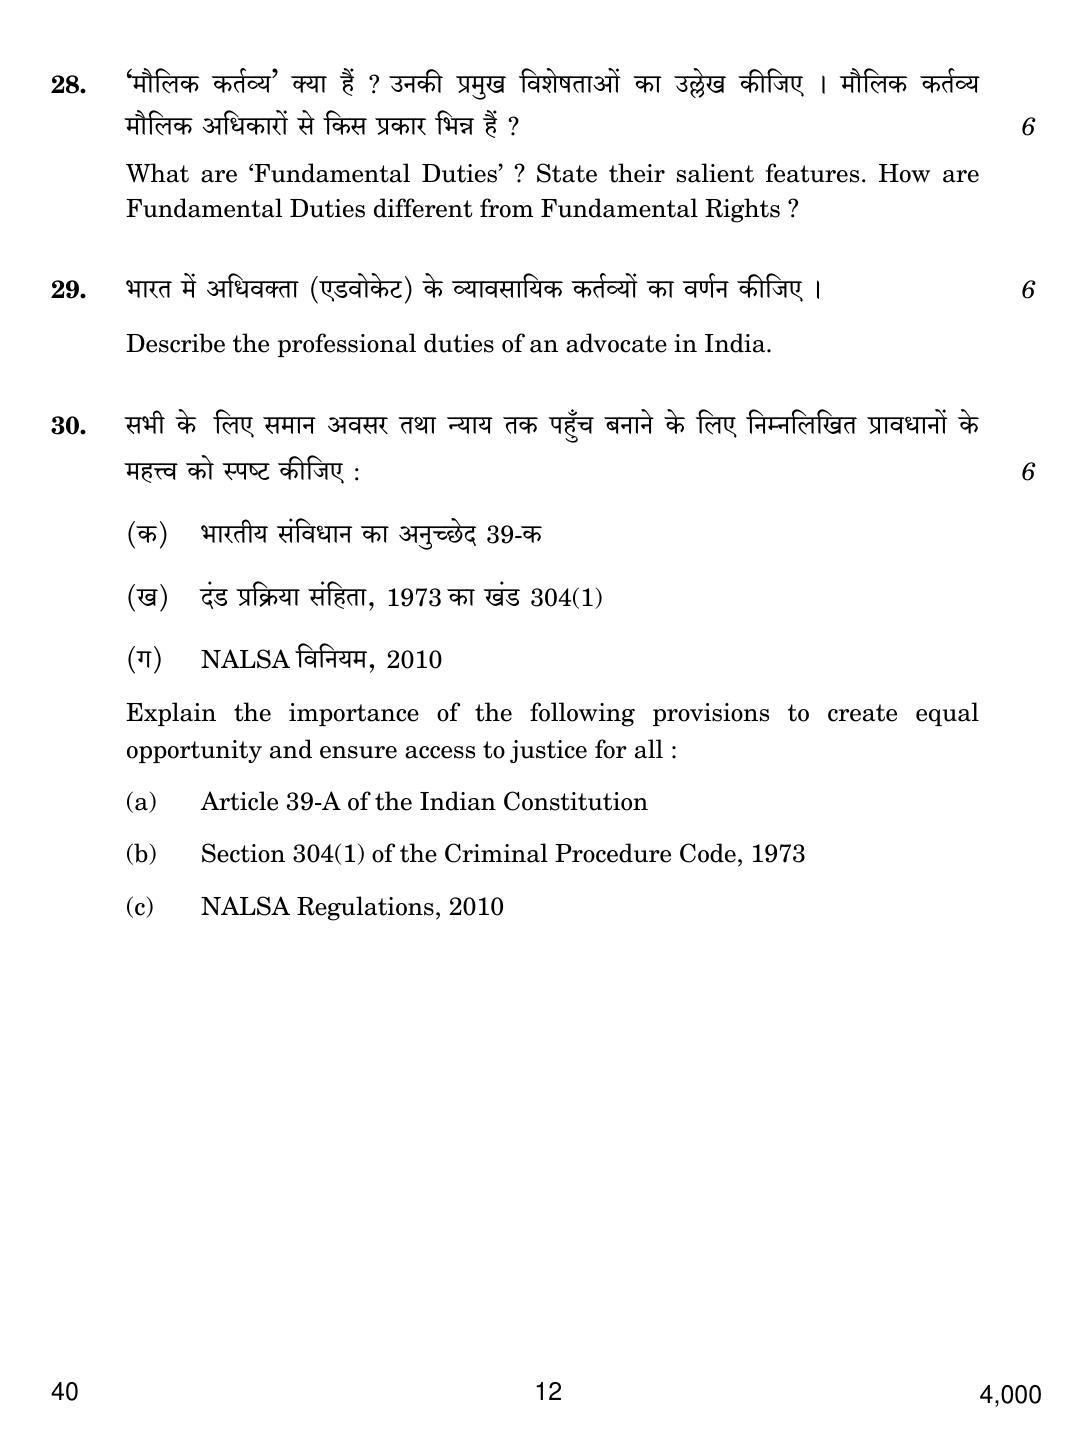 CBSE Class 12 40 LEGAL STUDIES 2018 Question Paper - Page 12